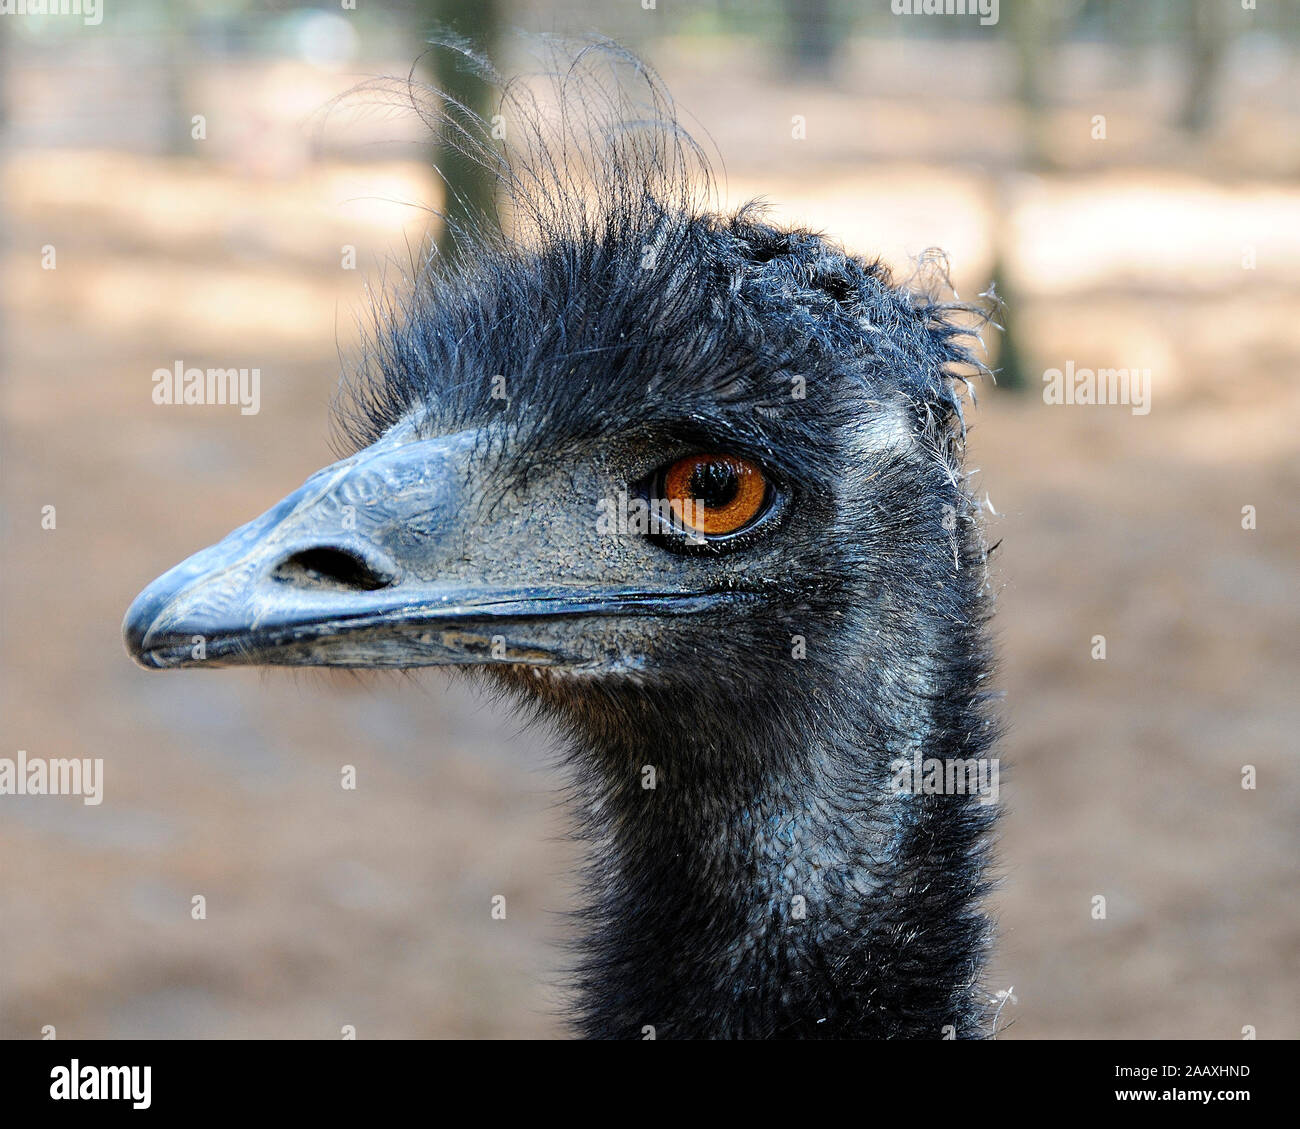 La UEM aves cerca de cabeza vista de perfil con grandes ojos, pico, Bill, shaggy plumaje gris-marrón, la cabeza en su entorno y sus alrededores. Foto de stock